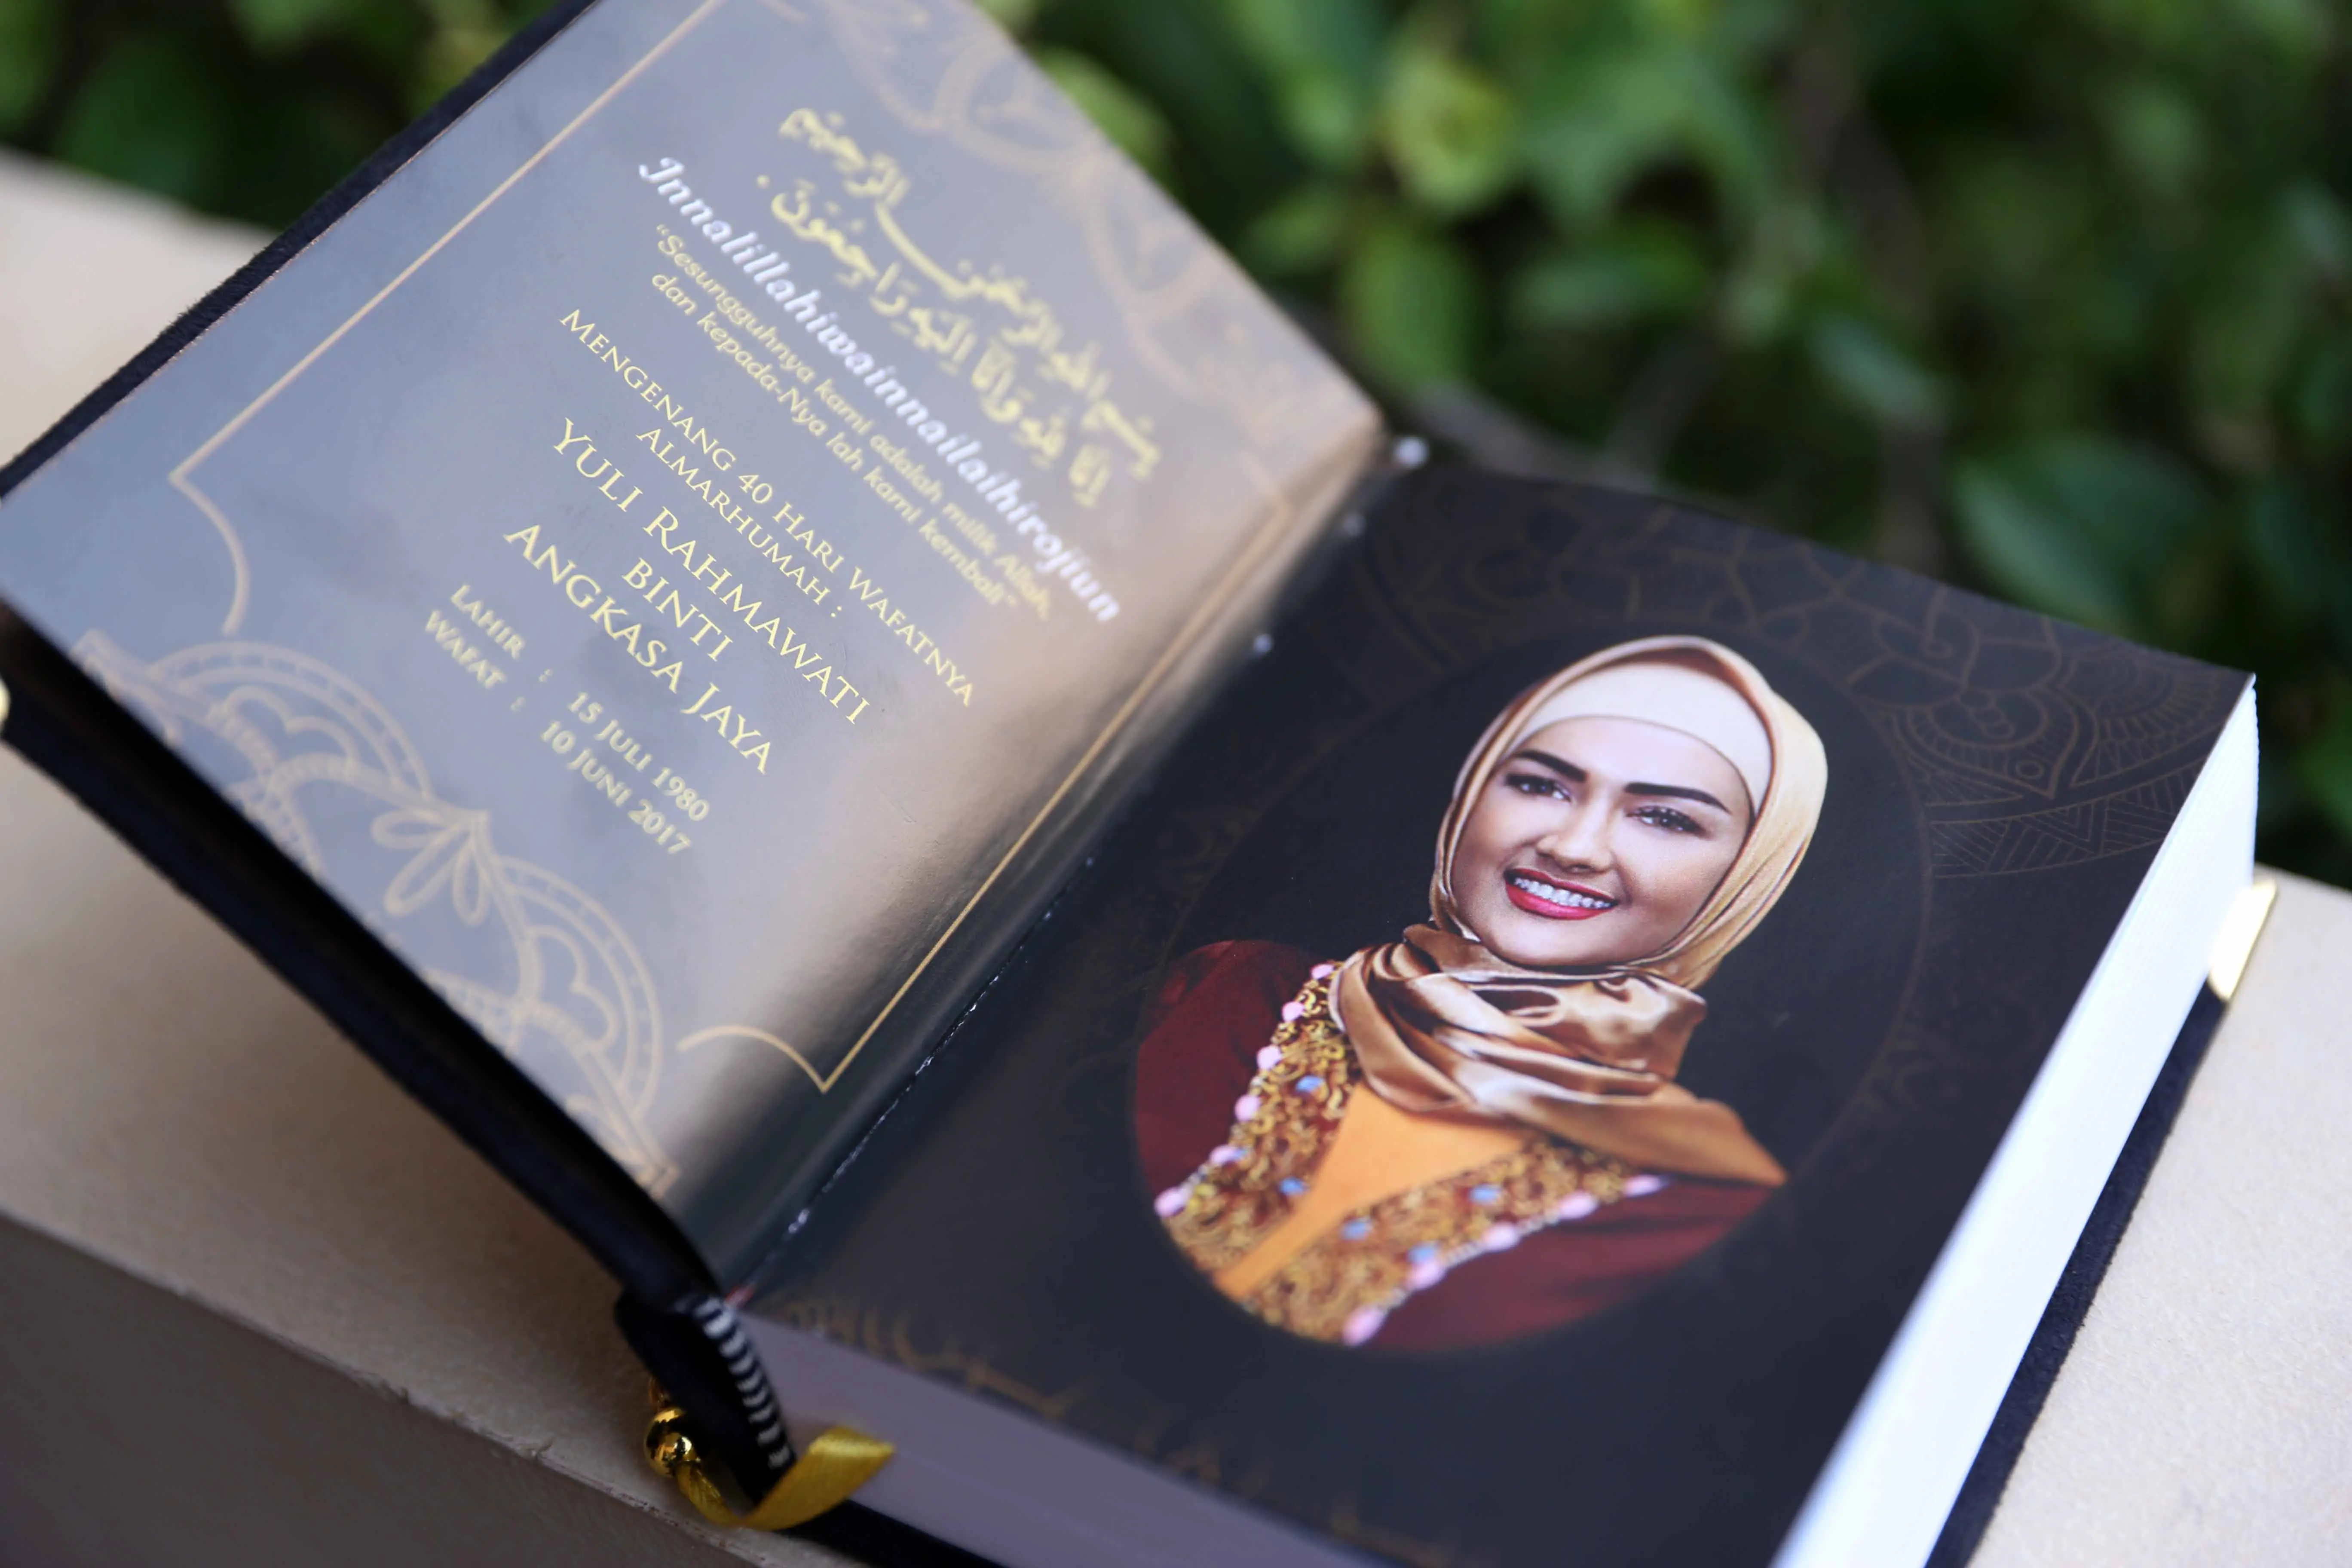 Ria Irawan menyerahkan buku yasin kepada keluarga  Julia Perez. (Nurwahyunan/bintang.com)